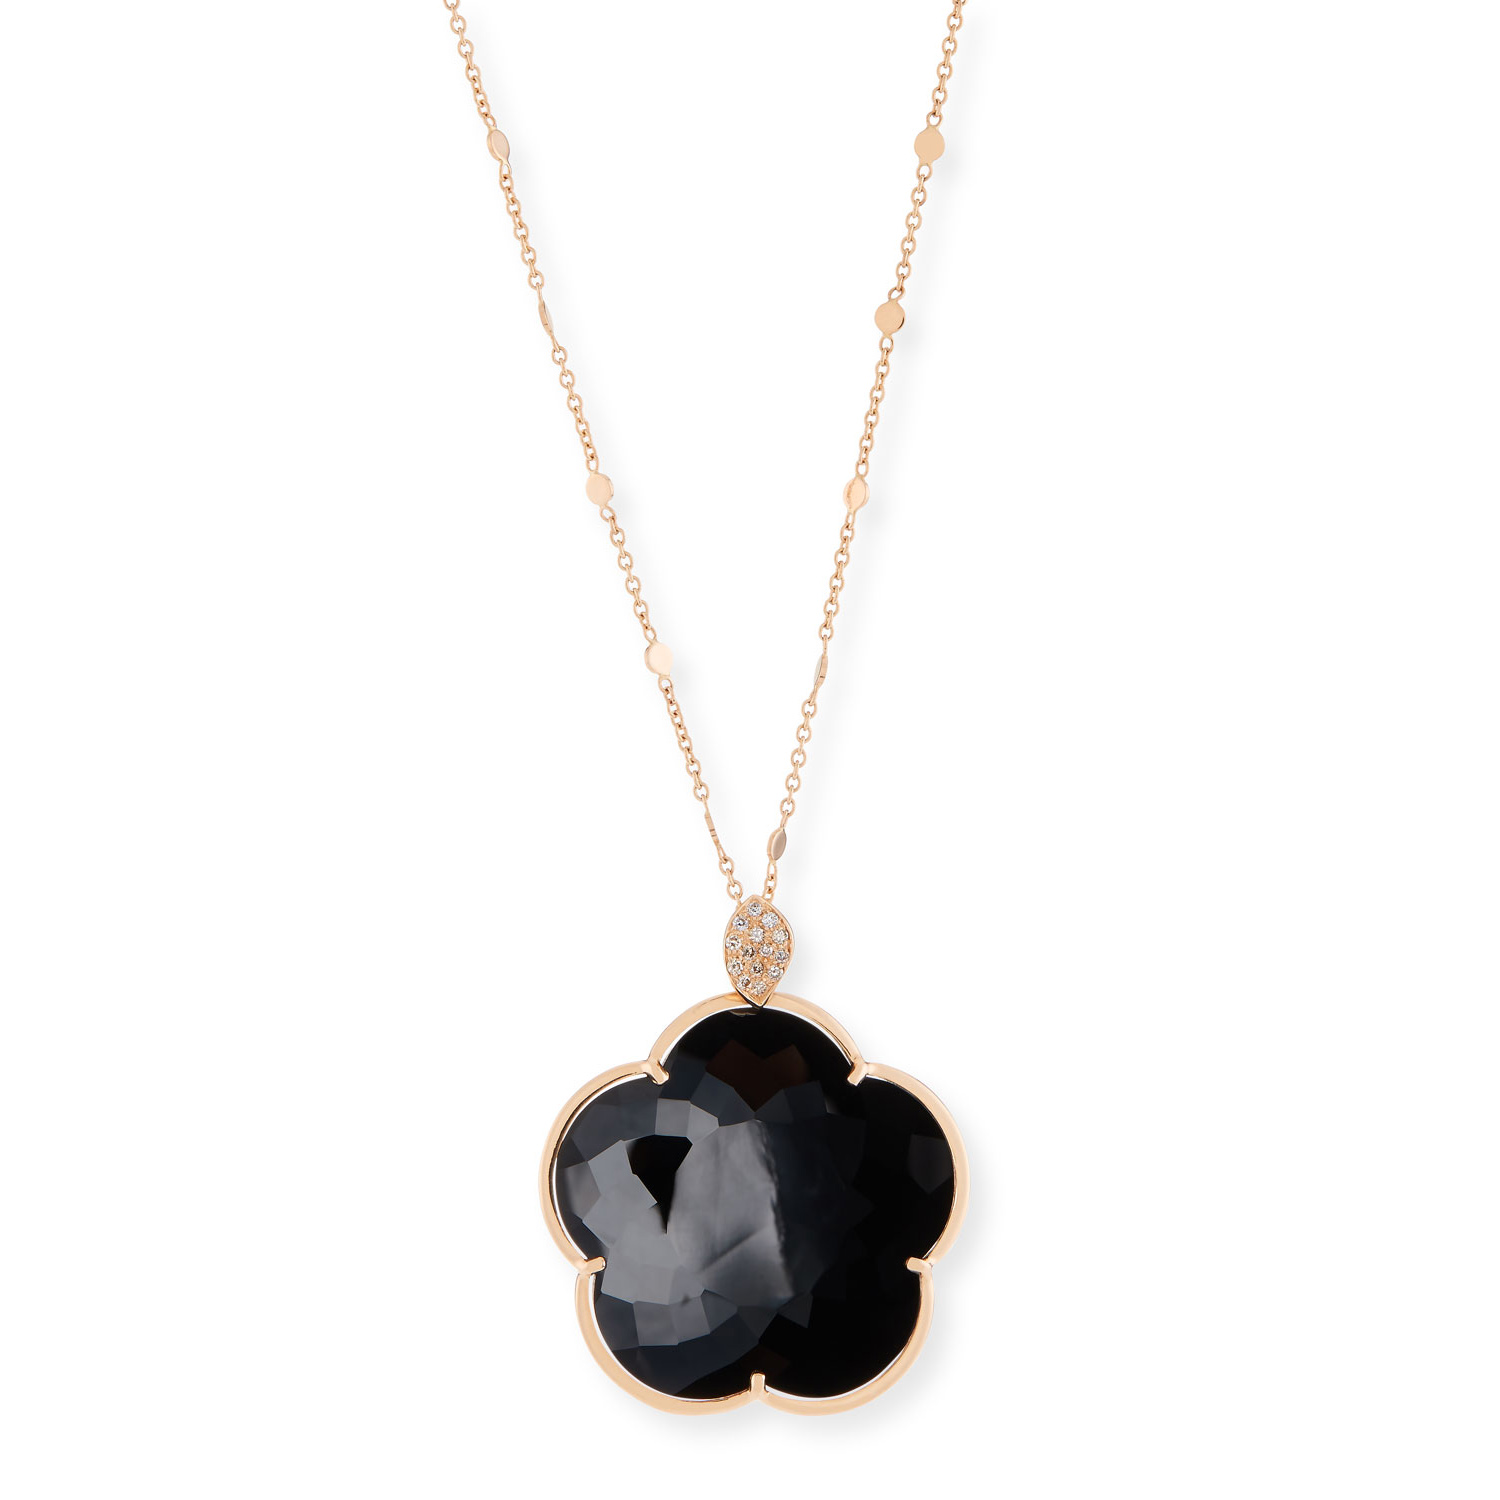 Оптовая продажа, изготовленное на заказ 18-каратного черного оникса OEM/ODM ювелирные изделия с цветочным кулоном, ожерелье с бриллиантами, женский дизайнер ювелирных украшений